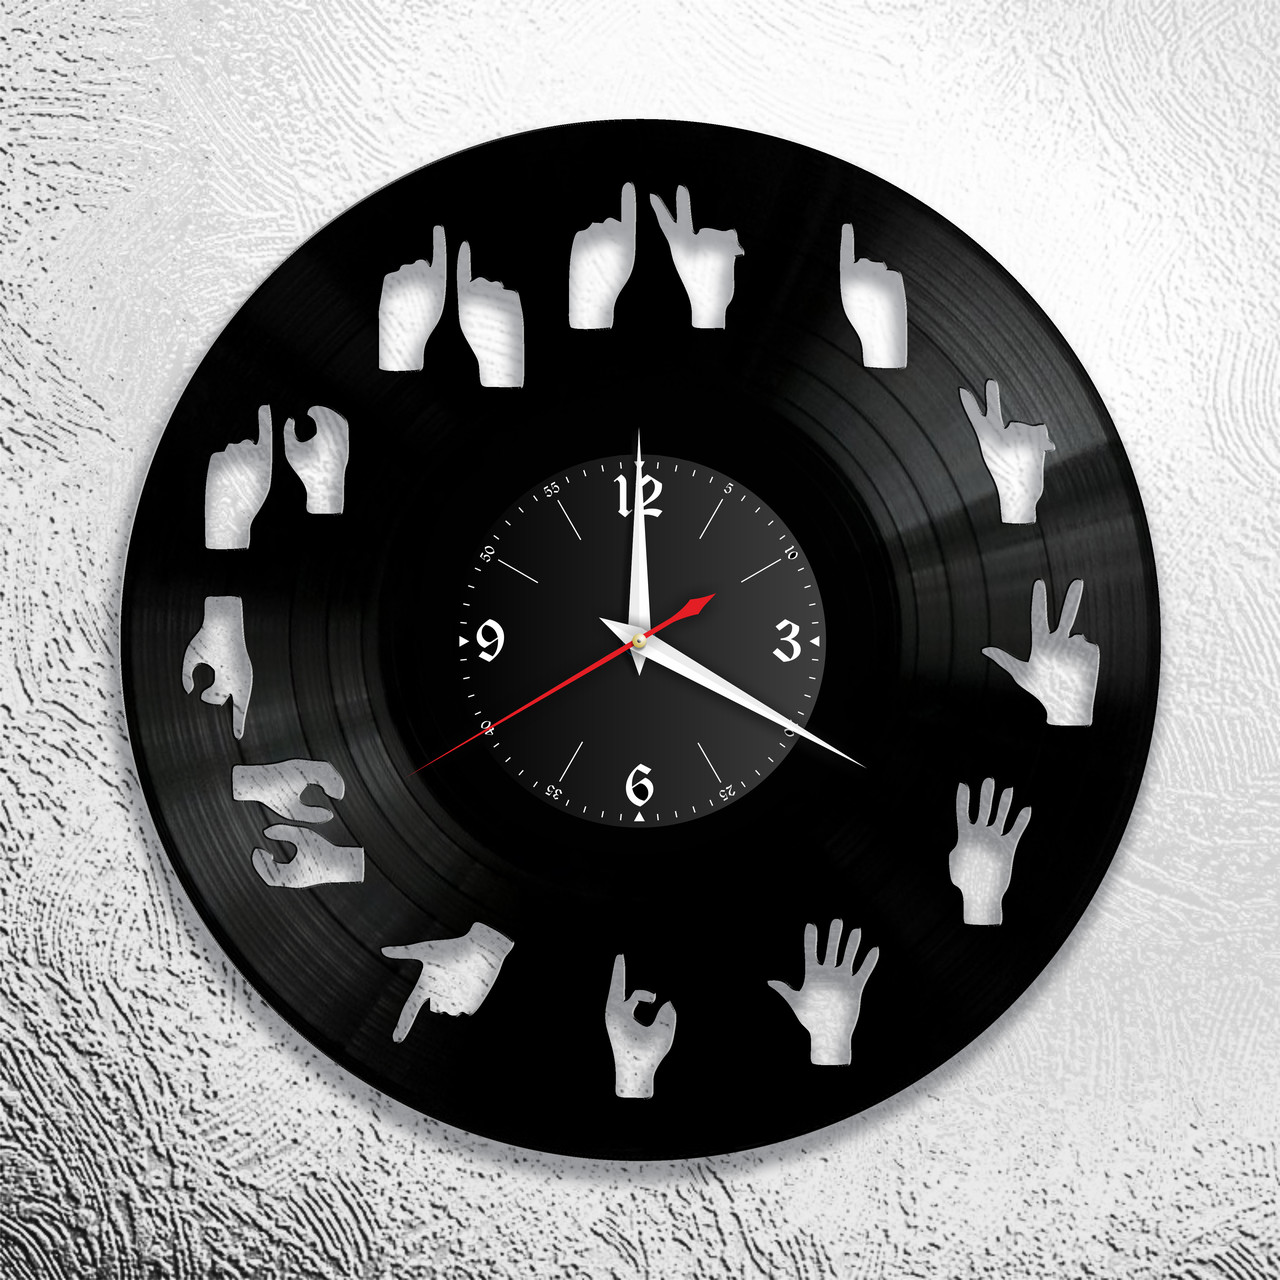 Оригинальные часы из виниловых пластинок "Цифры" Версия 11 (жесты)